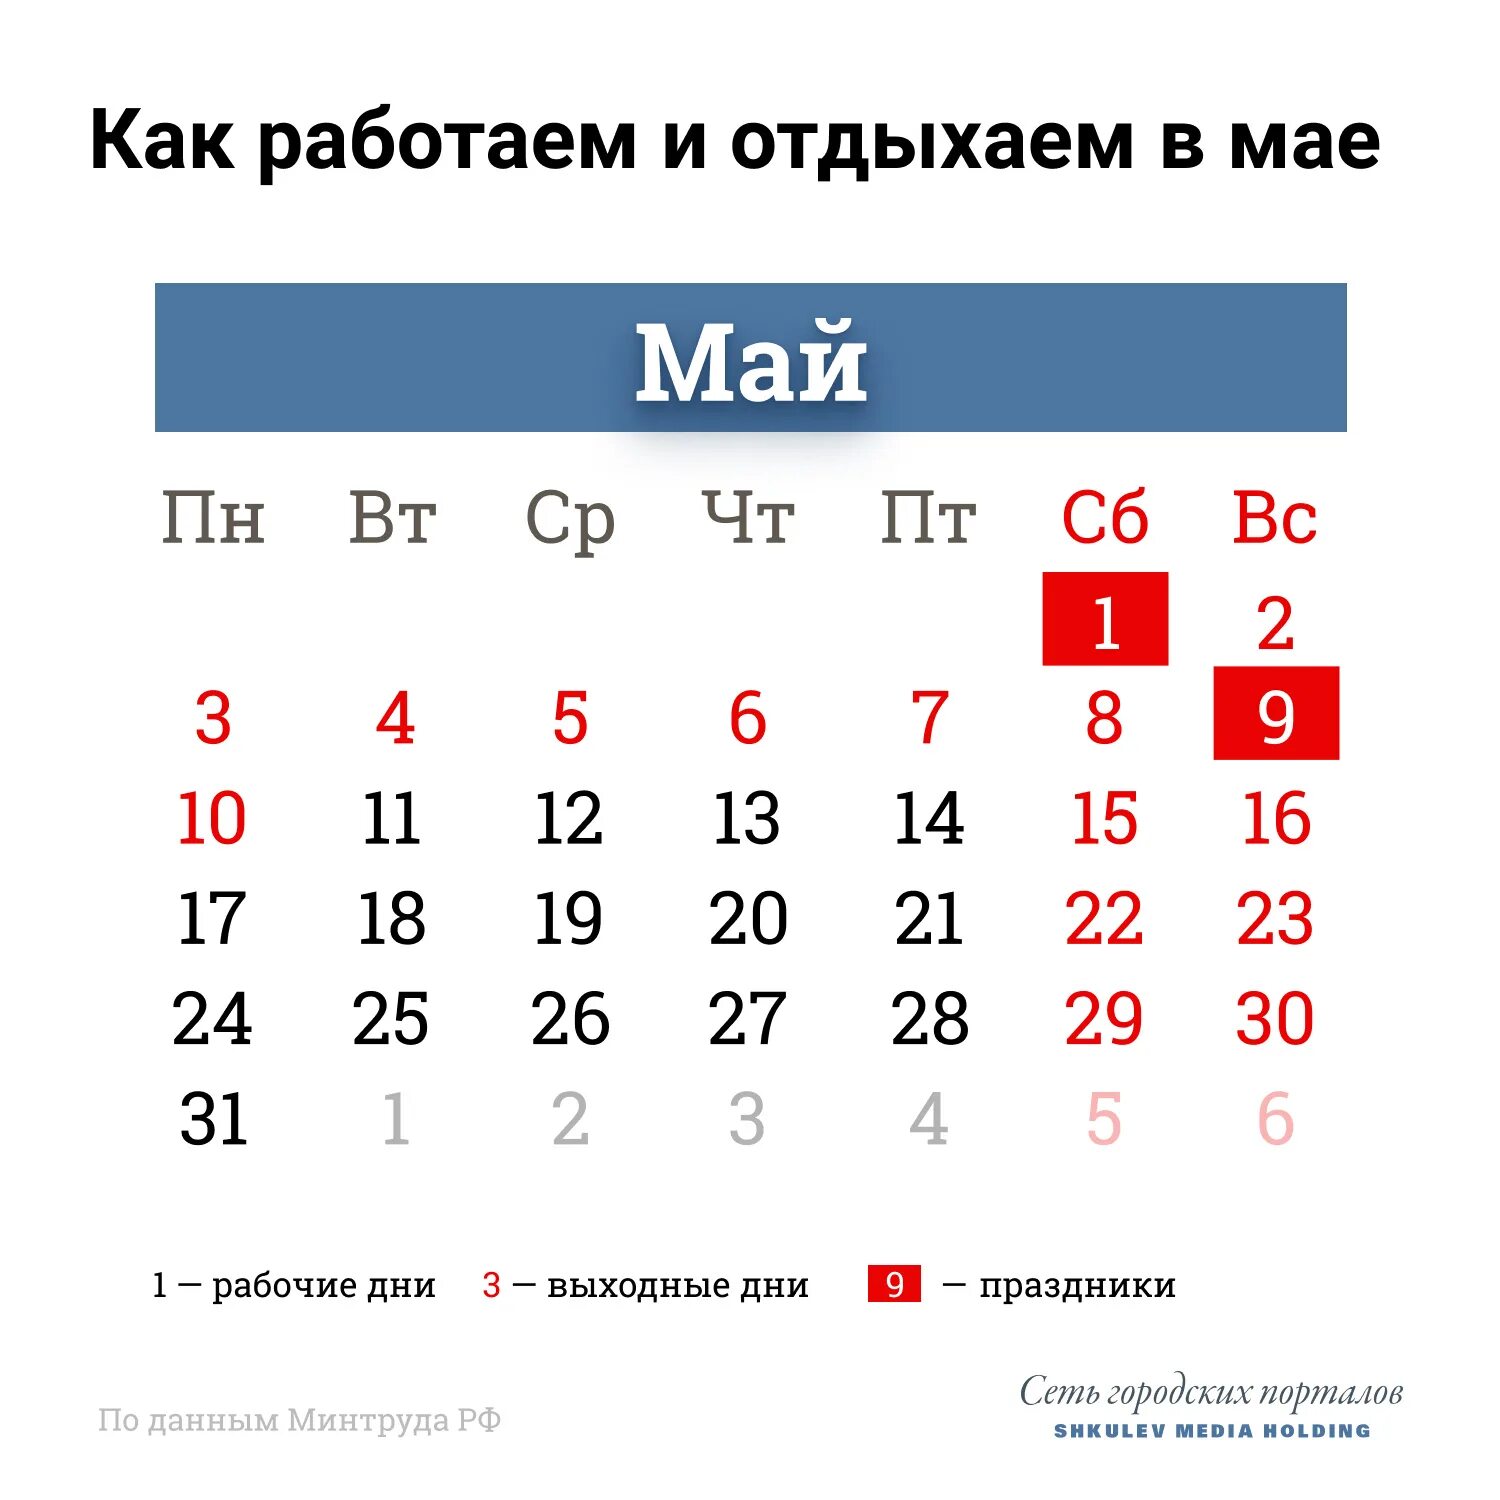 Праздничные дни в мае 2021 года в России. Выходные в мае. Майсеип праздник календарь. Майские праздники rfktylfh,. 4 и 5 мая выходные или рабочие